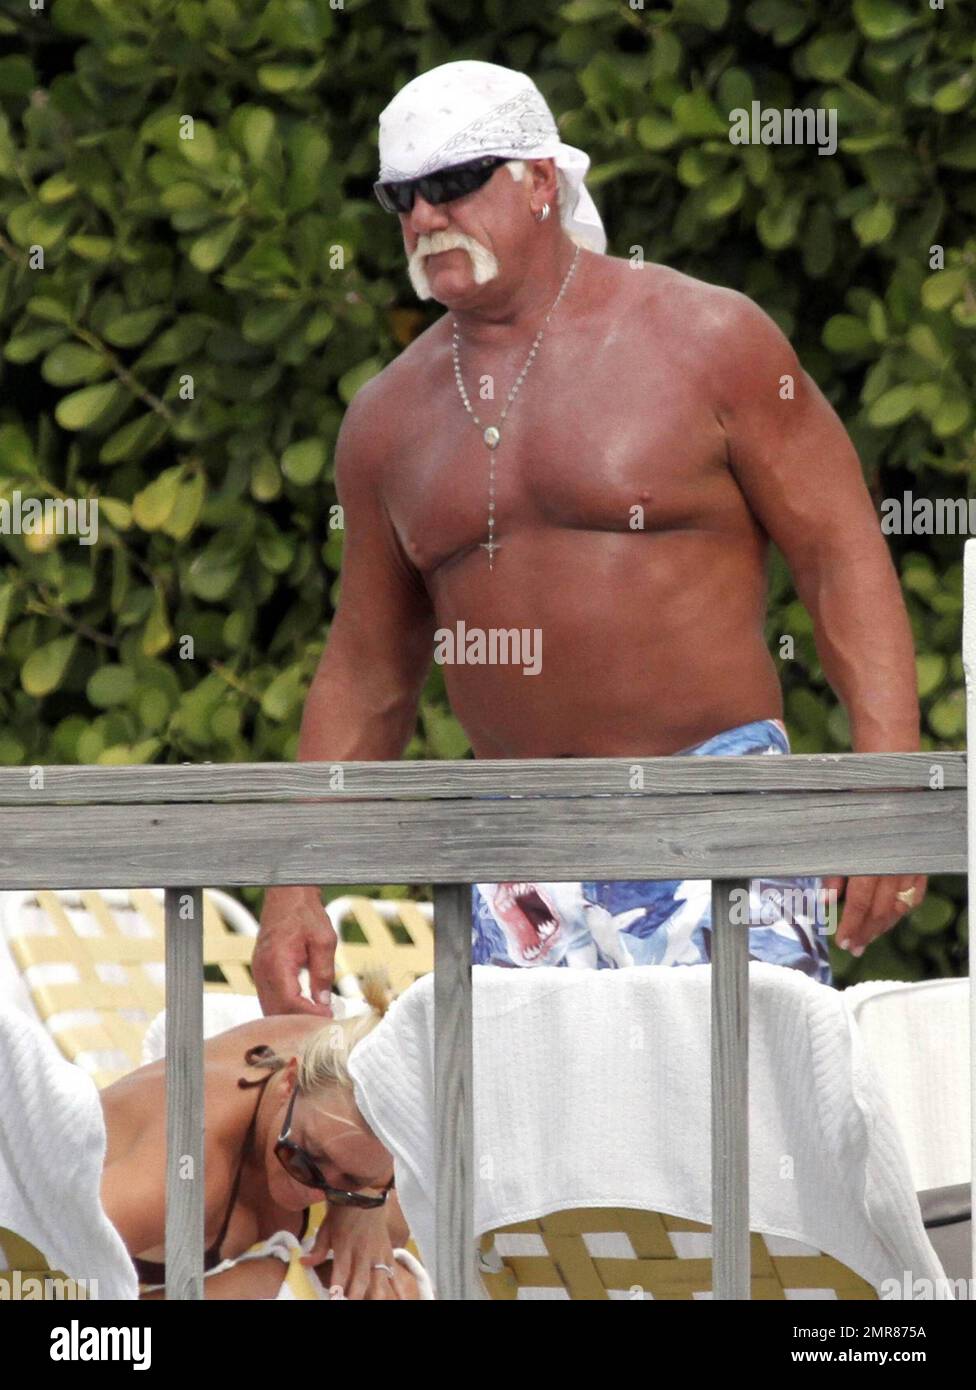 EXCLUSIVO! Hulk Hogan pasa el día junto a la piscina con su hija Brooke y su novia Jennifer McDaniel foto Foto